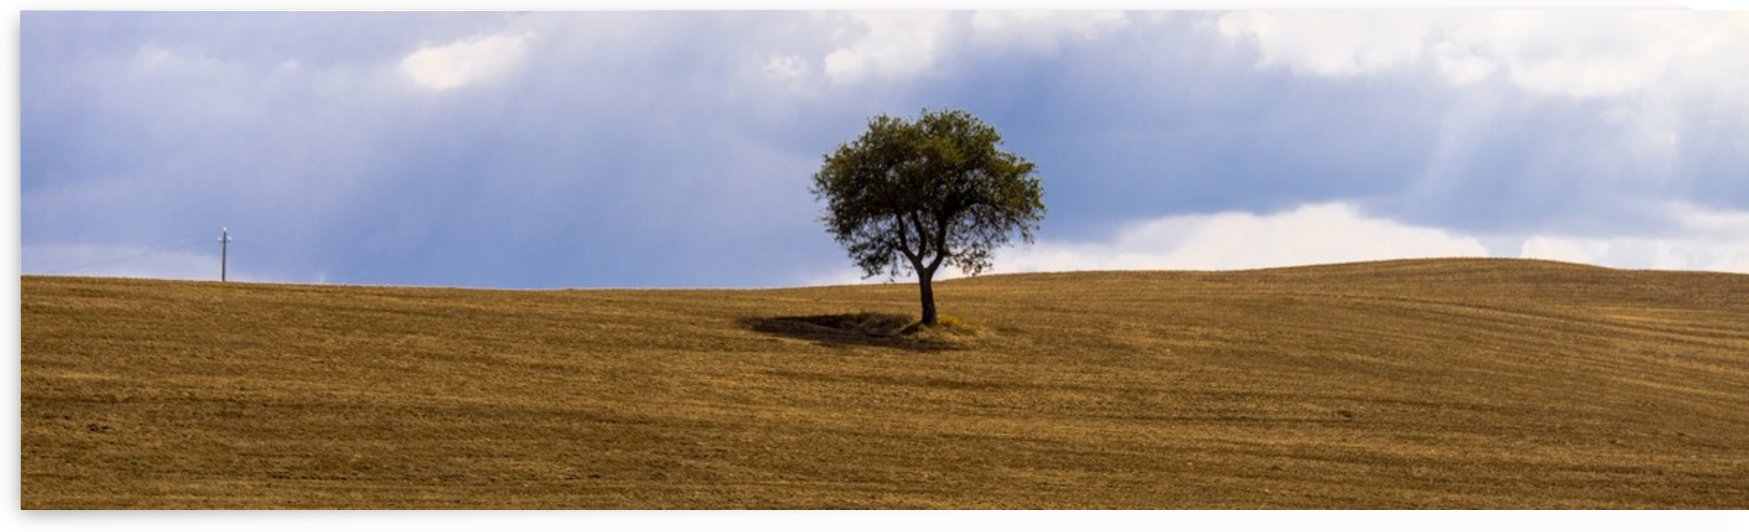 Tuscany Tree by Fabien Dormoy